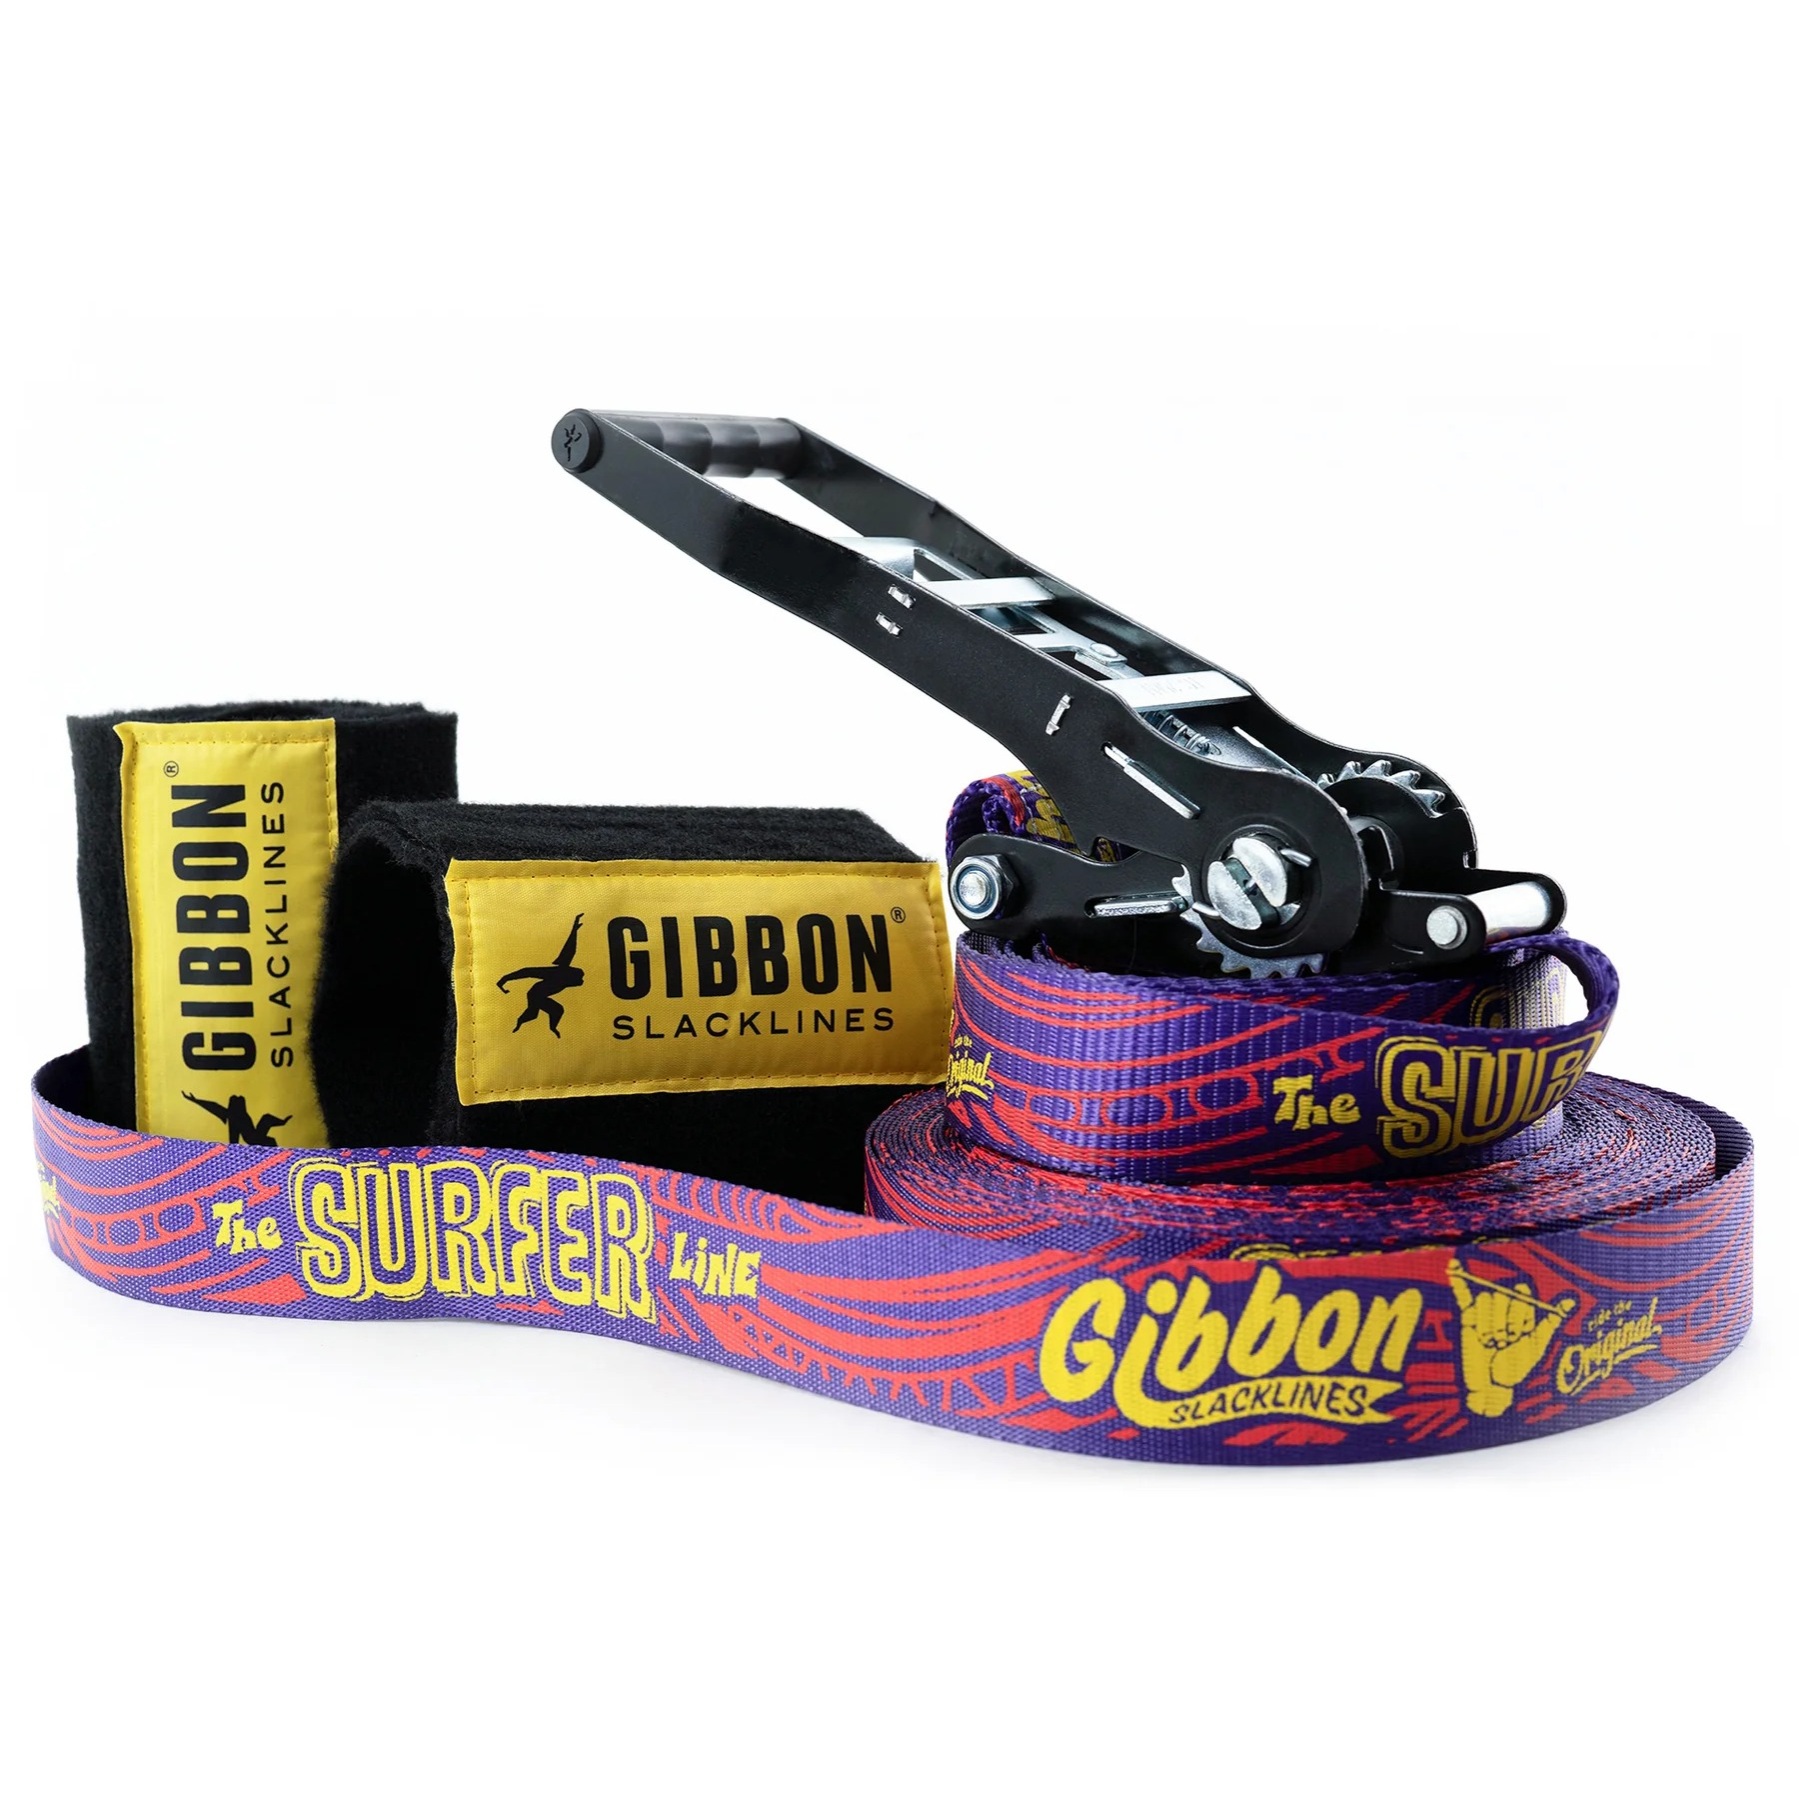 Foto de GIBBON Slackline 30m - Surferline Treewear Set - púrpura